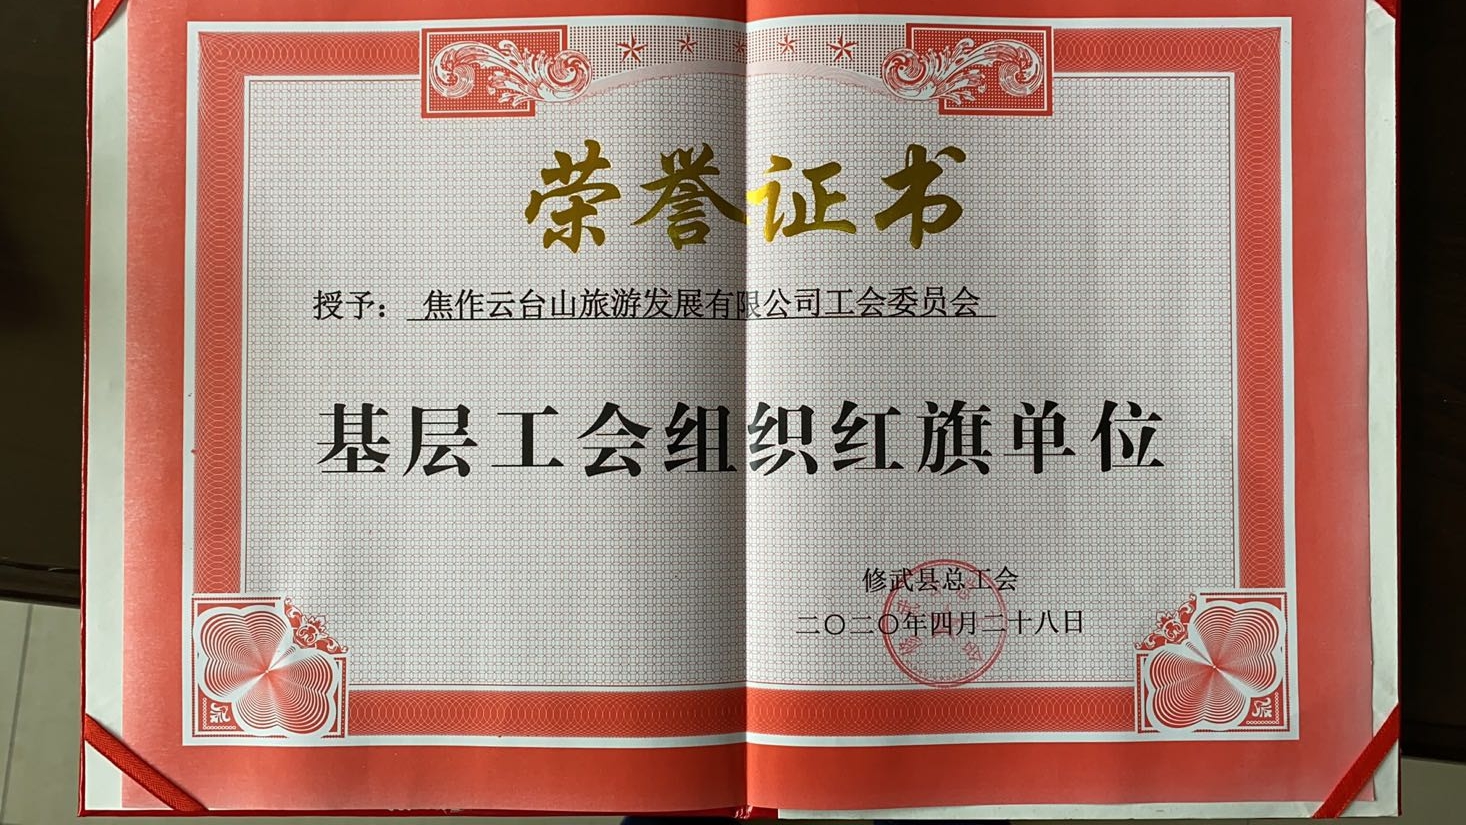 修武县总工会授予焦作云台山旅游发展有限公司工会委员会“基层工会组织红旗单位”荣誉证书。